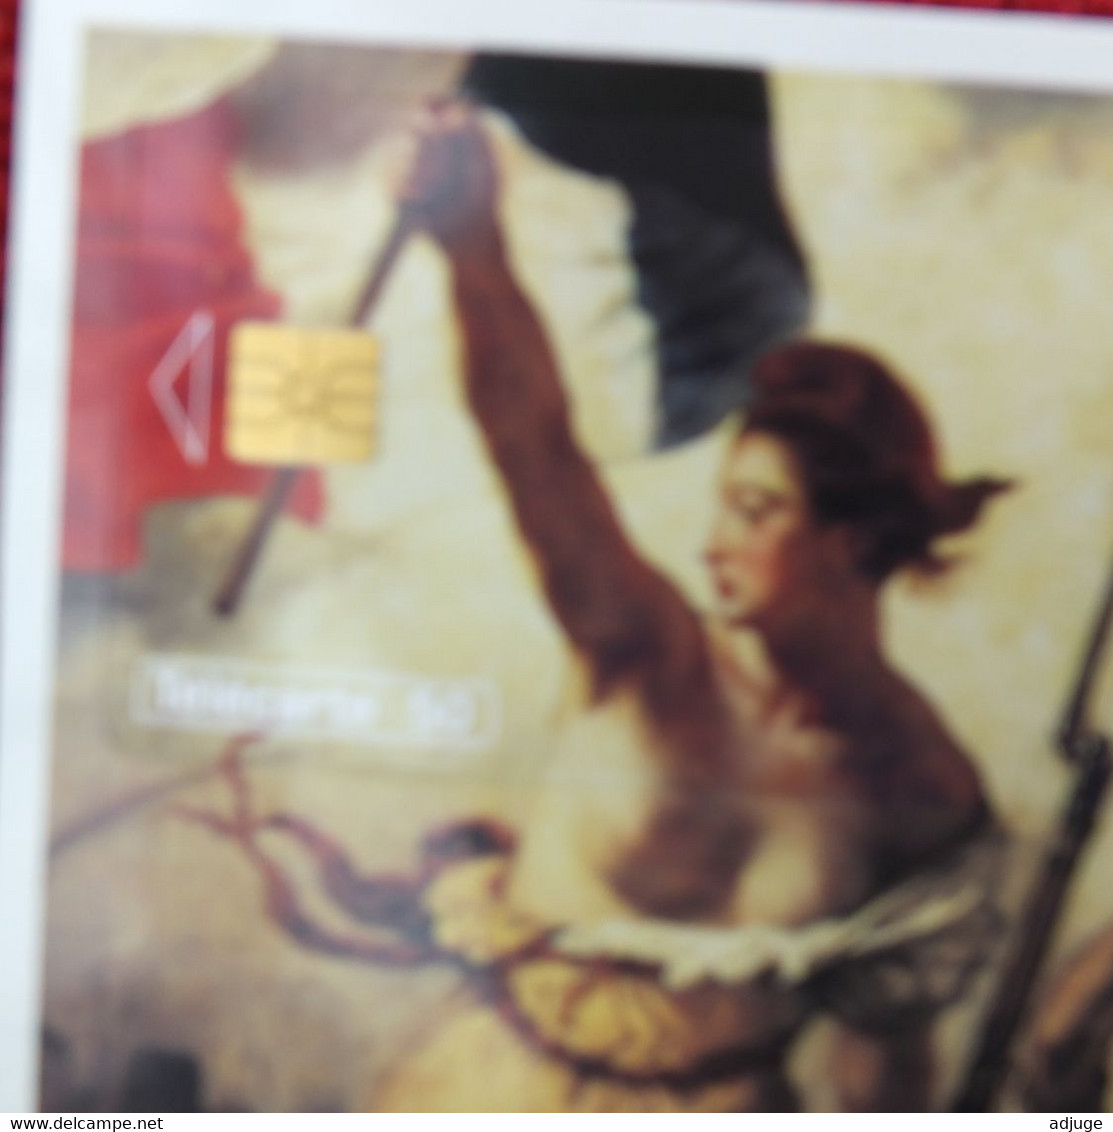 Télécarte 50 U- Puzzle- La Liberté Guidant Le Peuple -E.Delacroix- Neuf Sous Blister - Format  14 X 20 Cm * - Pittura